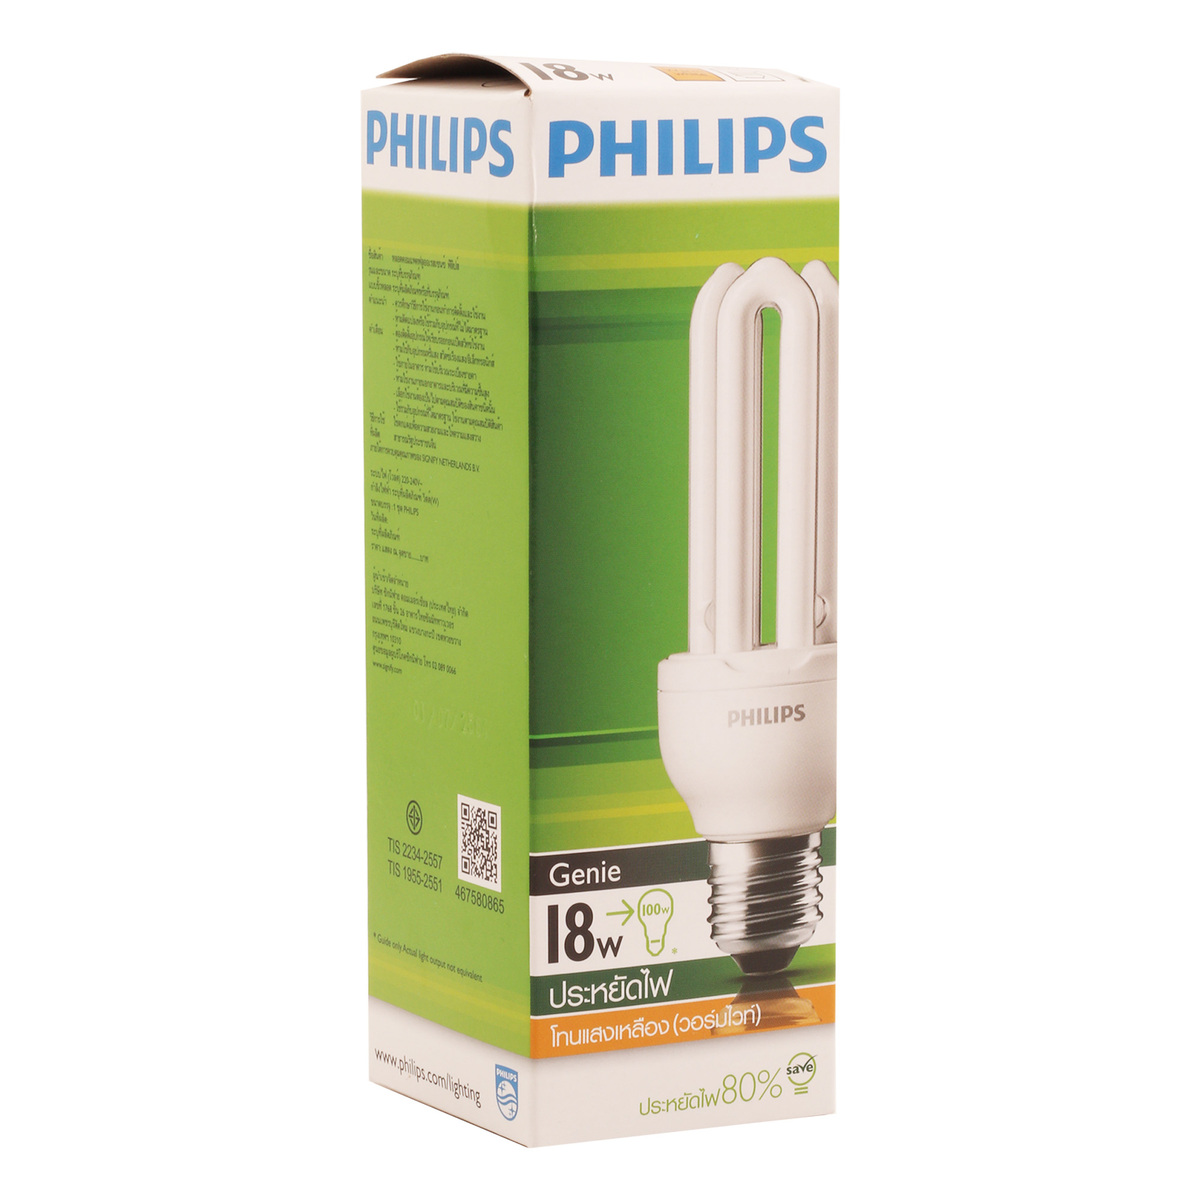 Philips Genie Bulb 18W Warm White